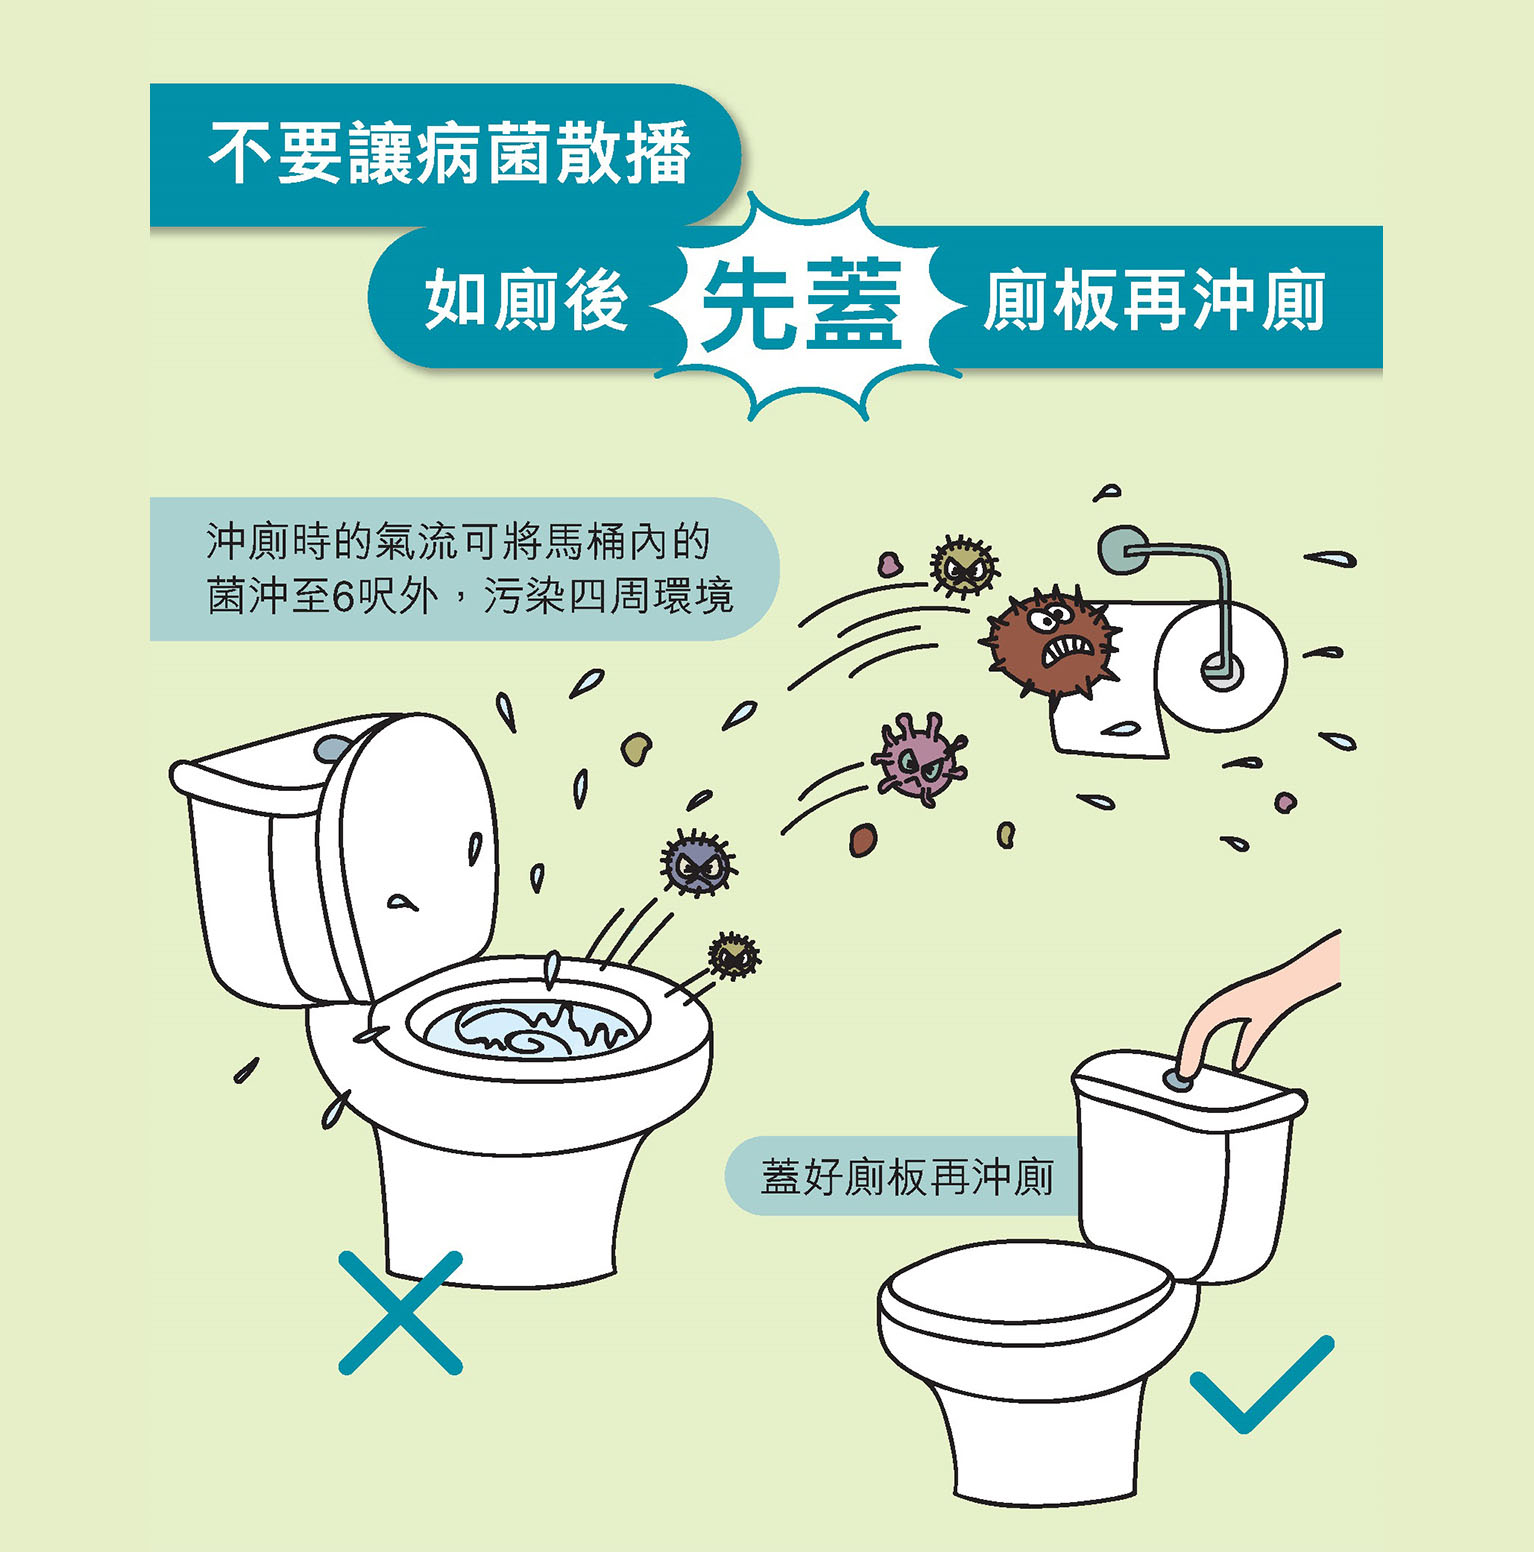 不要让病菌散播 如厕后先盖厕板再冲厕